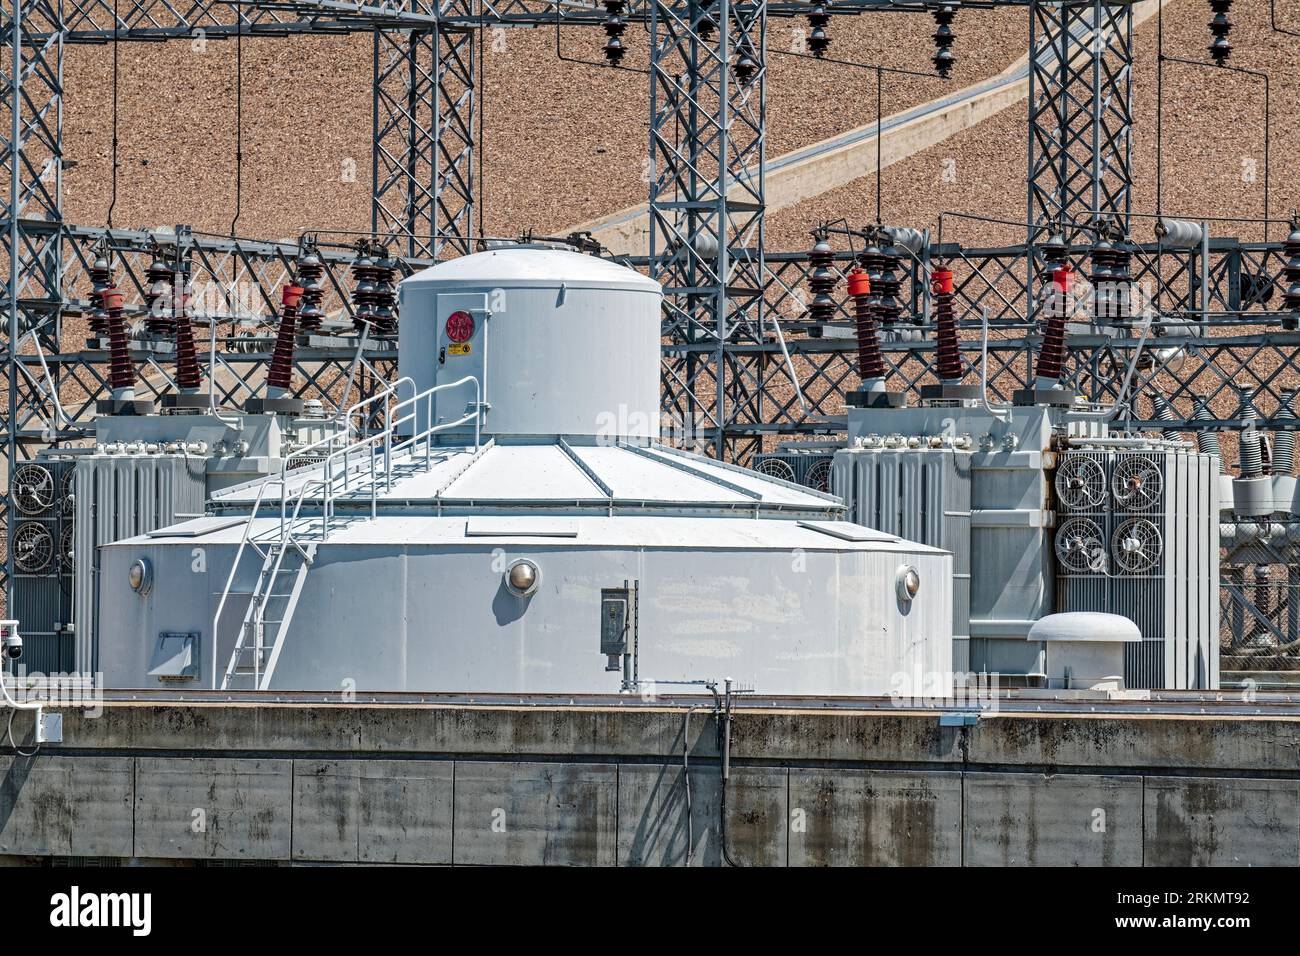 Le boîtier d’une génératrice à turbine au barrage C.J. Strike près de Bruneau, Idaho, États-Unis Banque D'Images